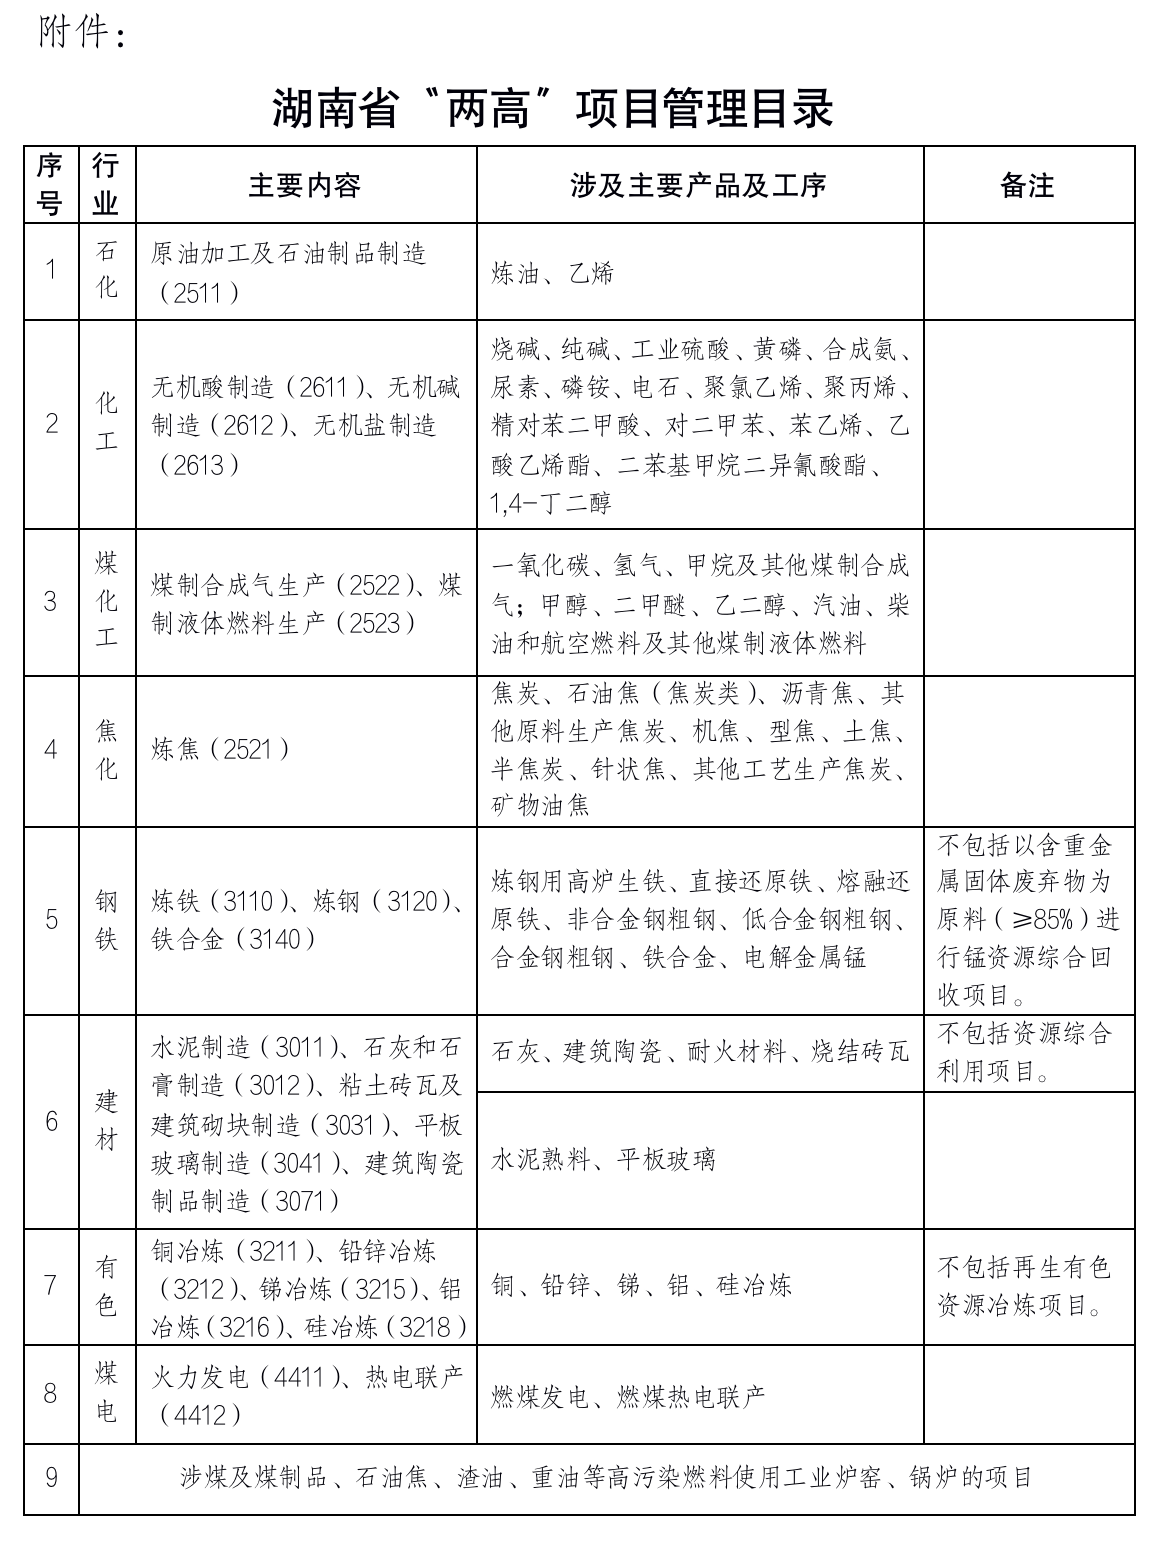 《湖南省“两高”项目管理目录》印发 包括铜、铅锌、锑、铝、硅冶炼